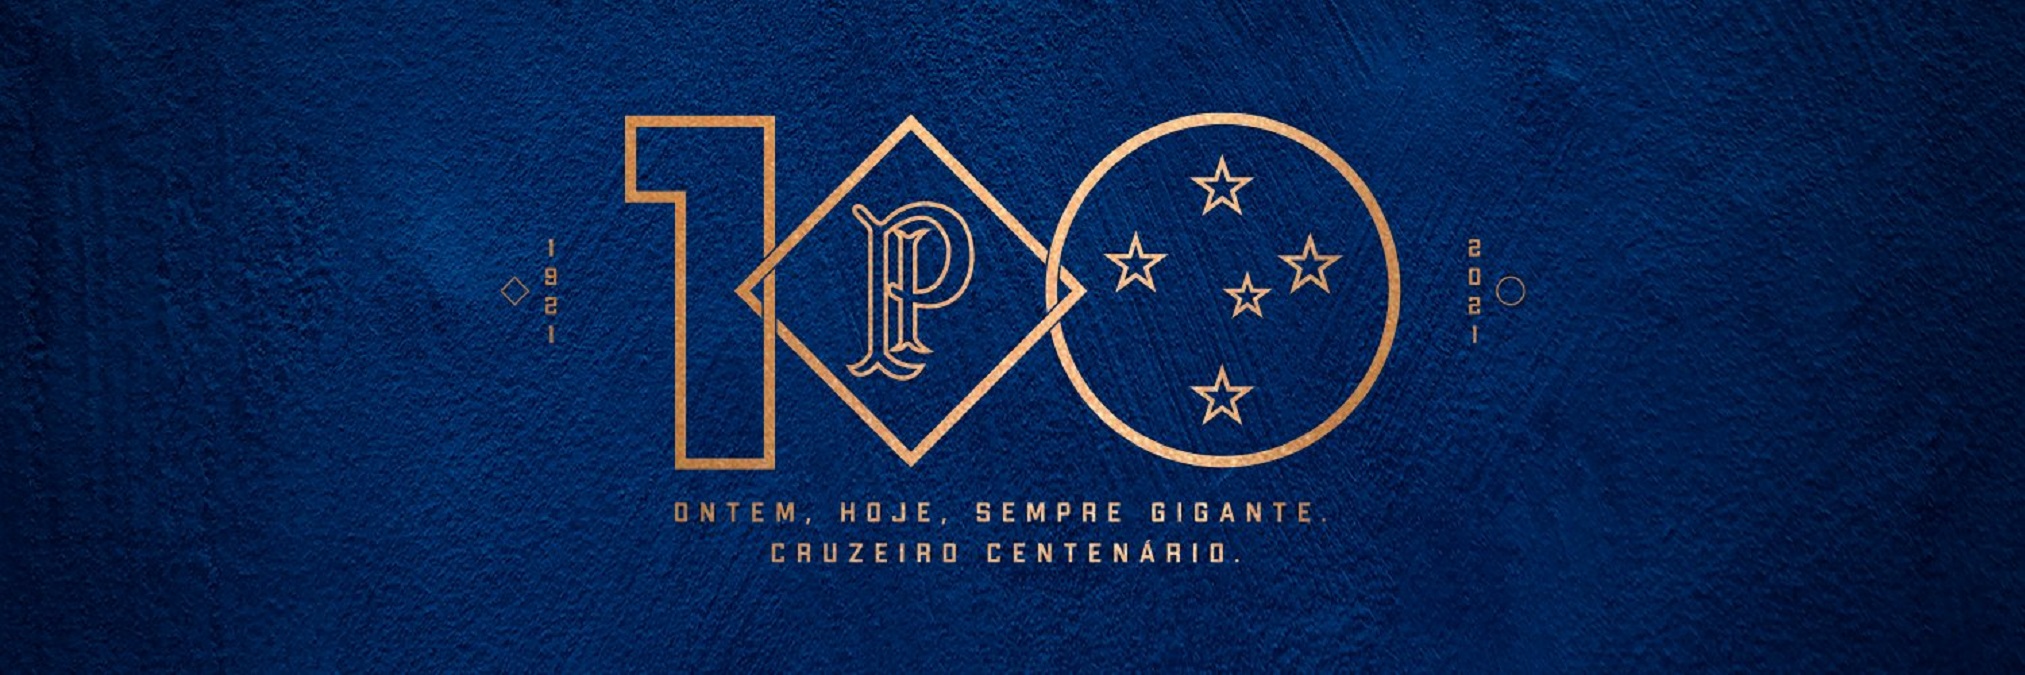 Faltando 100 dias para o centenário, Cruzeiro apresenta nova marca